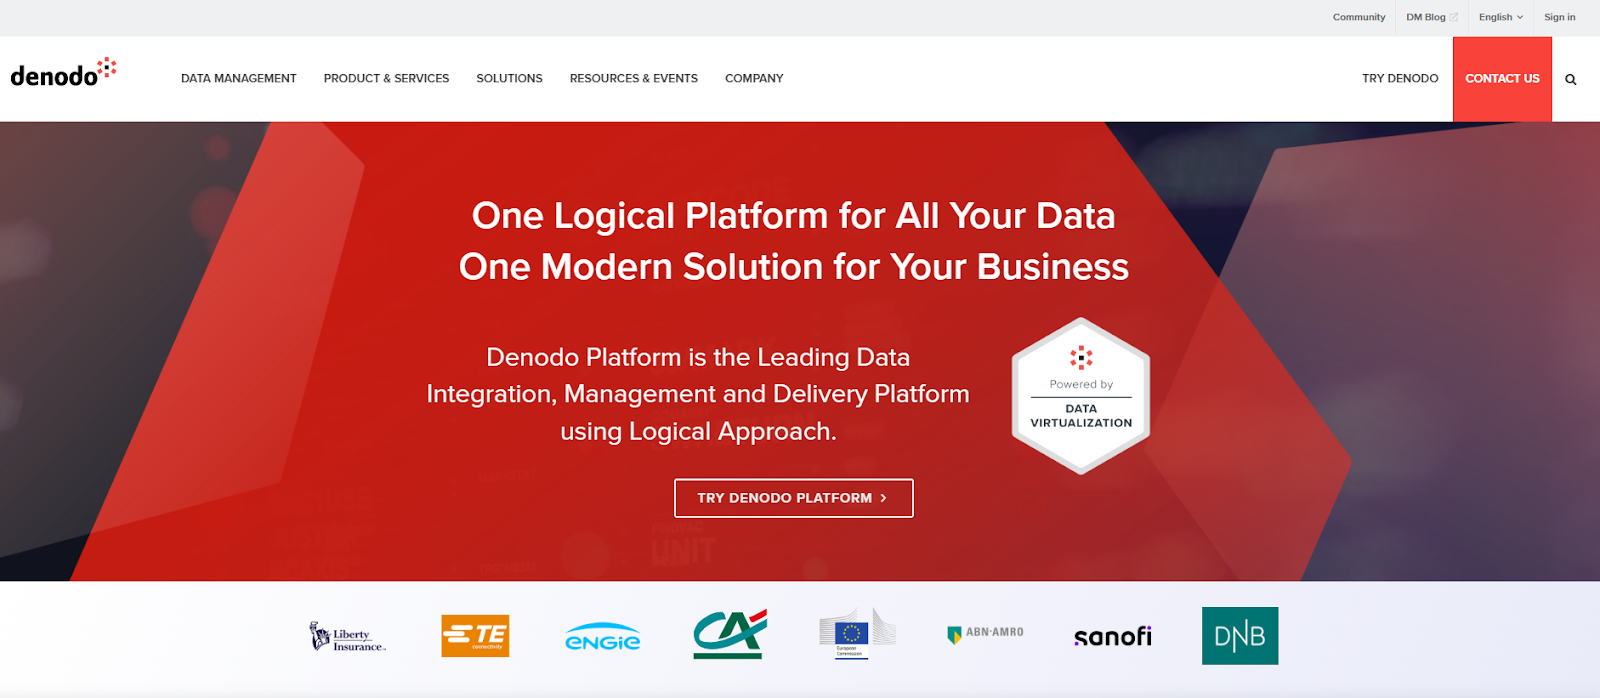 Denodoがデータ仮想化ウェビナーを開催